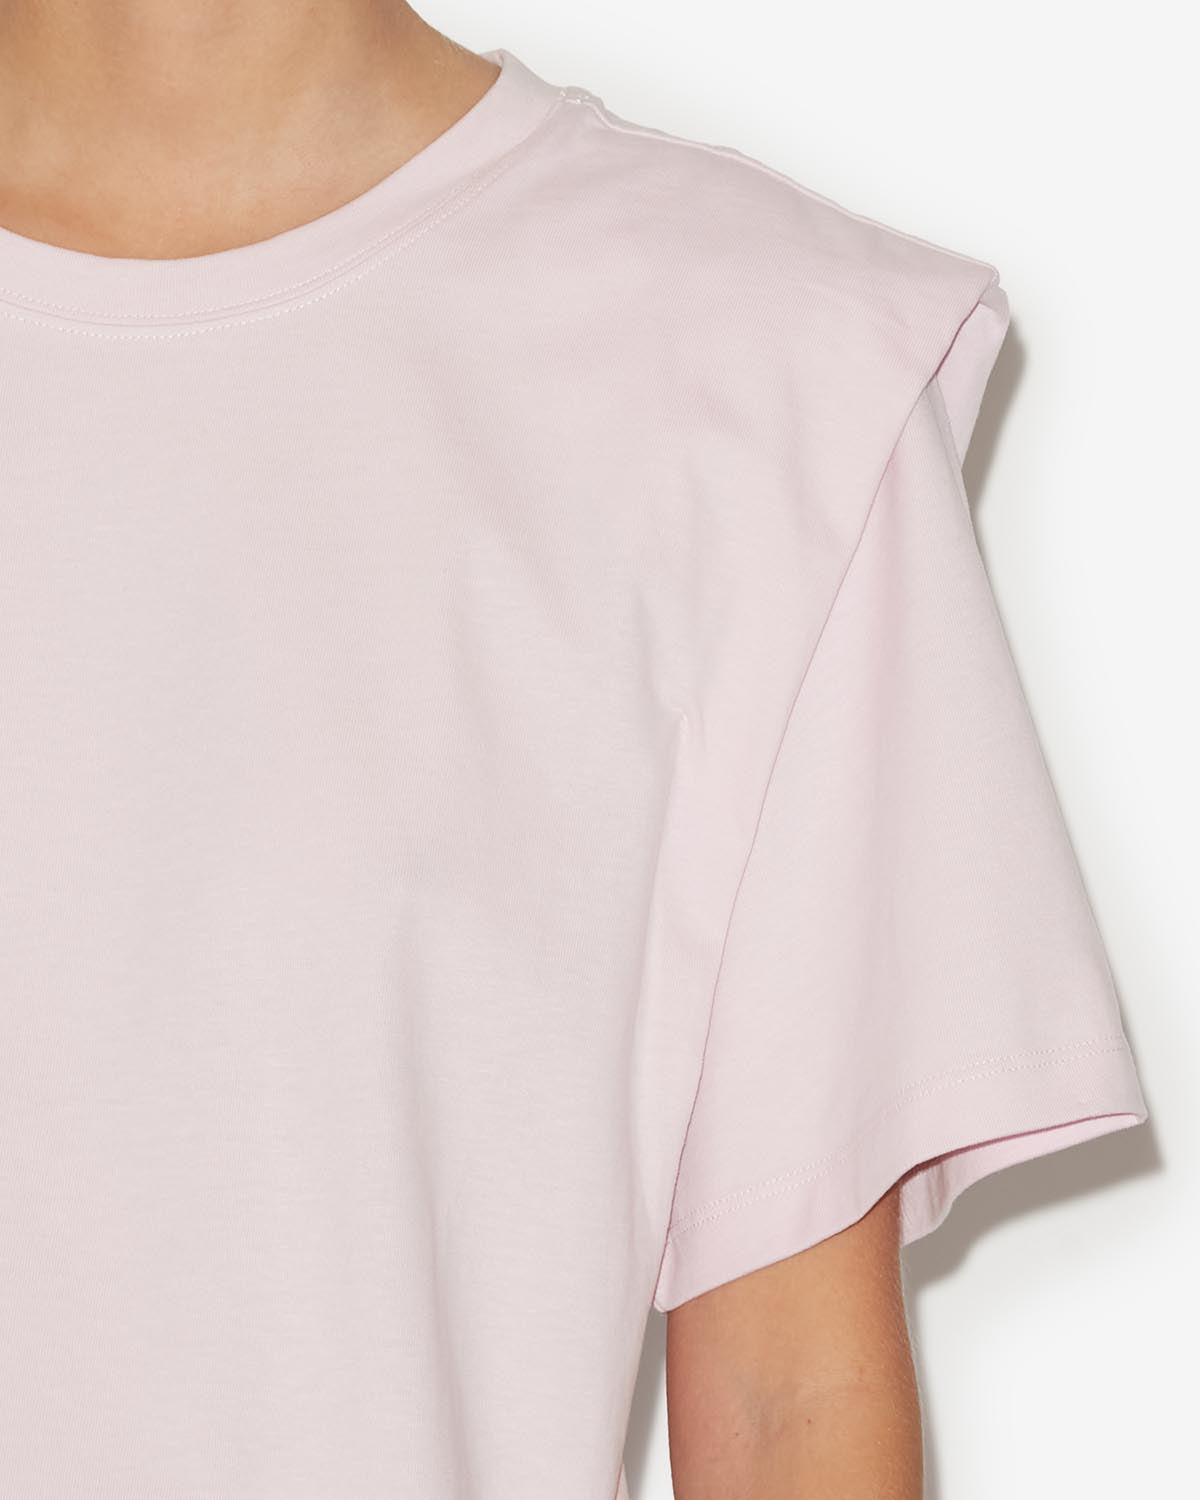 Zelitos tee shirt Woman Light pink 8